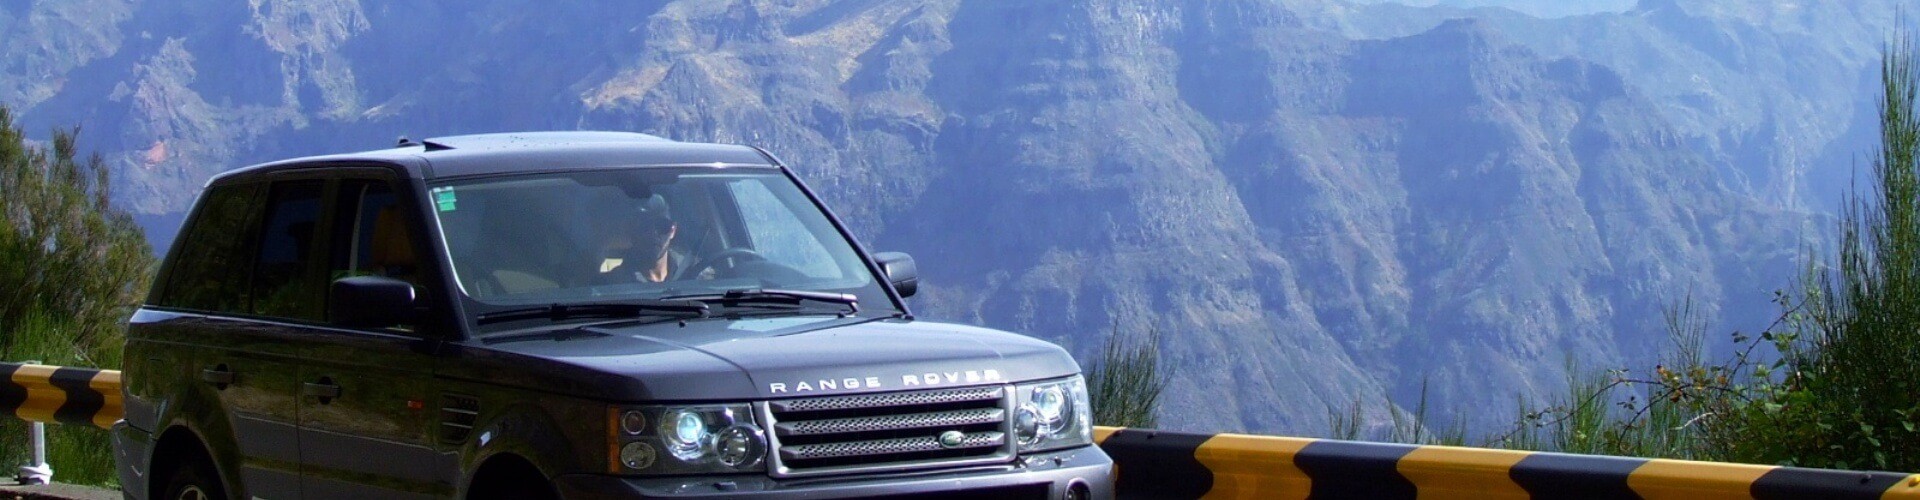 Expedição Privada Meio Dia num Range Rover na Madeira